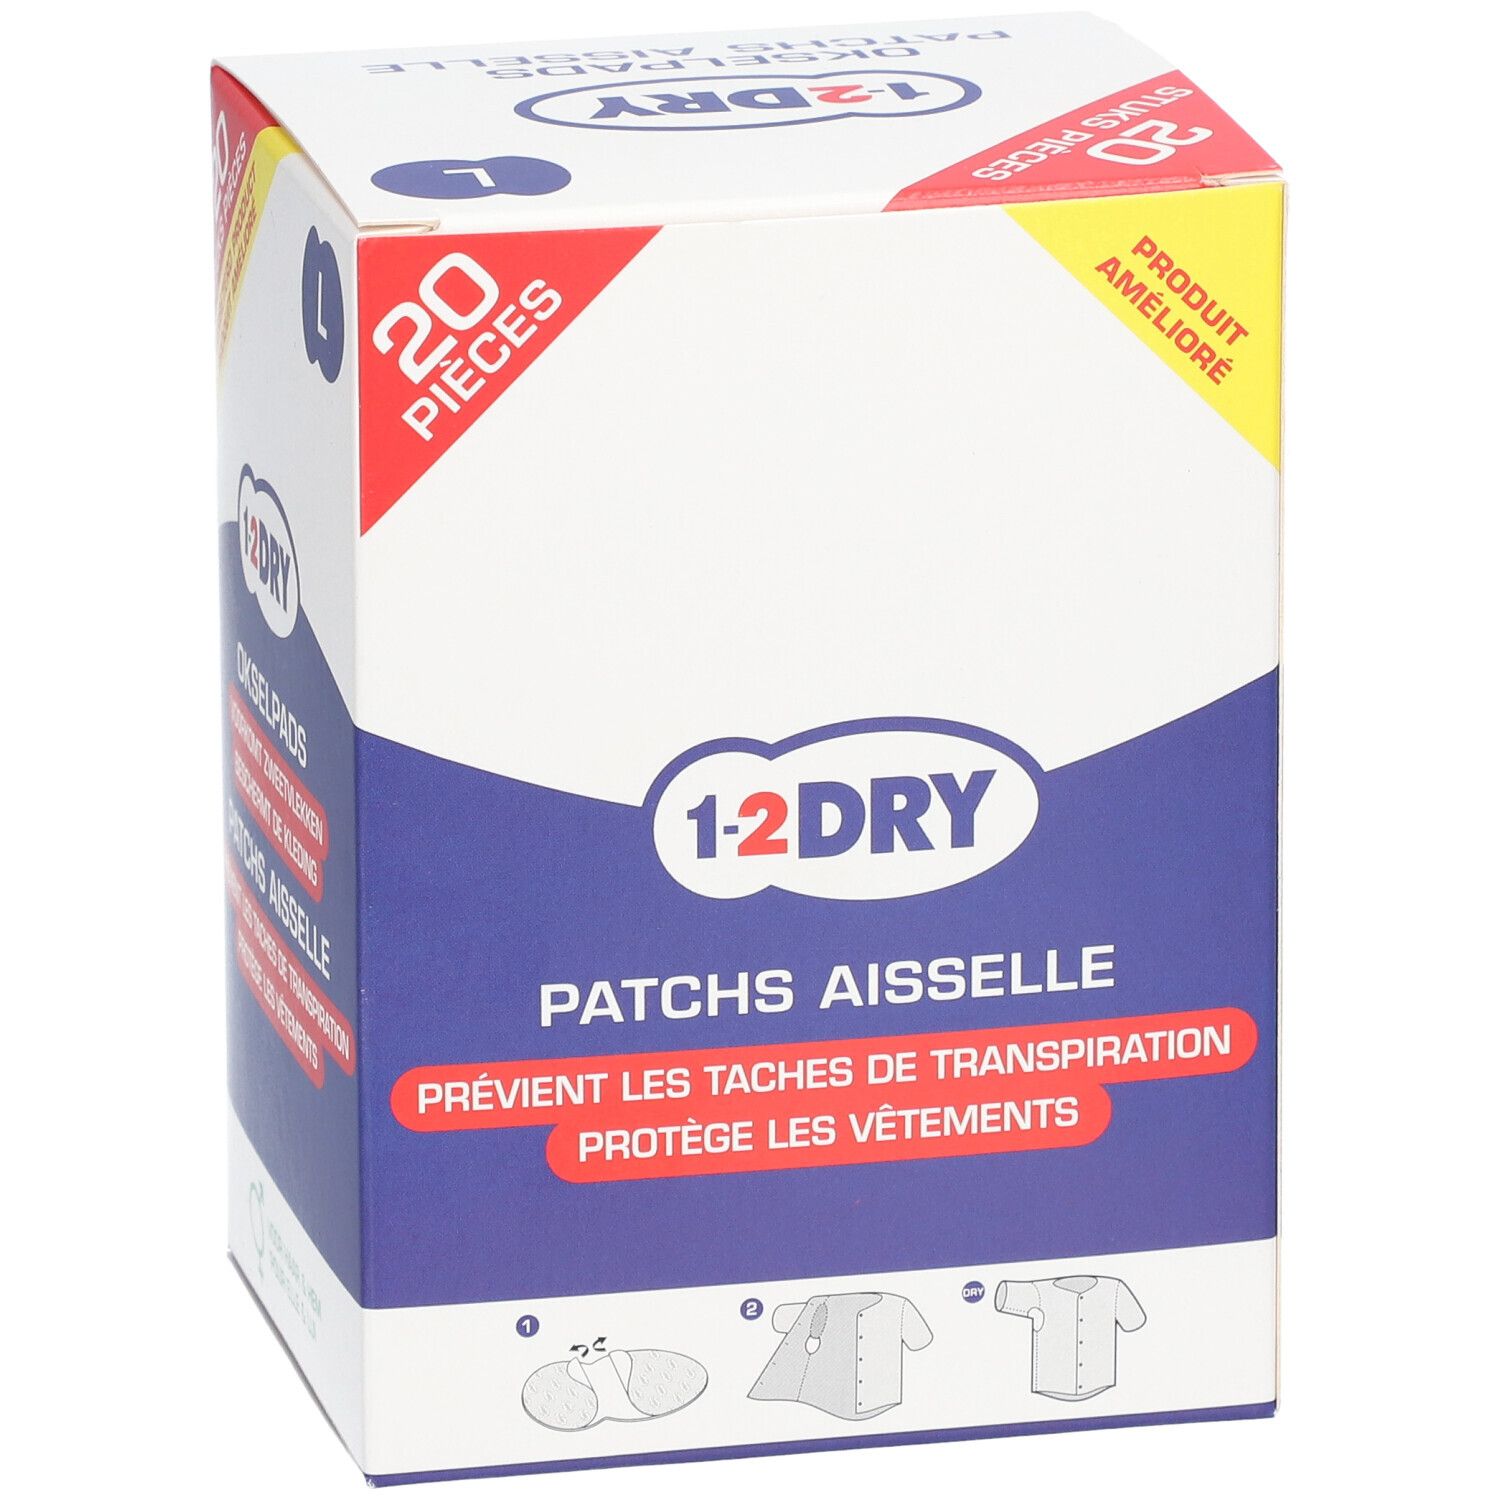 1-2 DRY Patchs aisselles Large